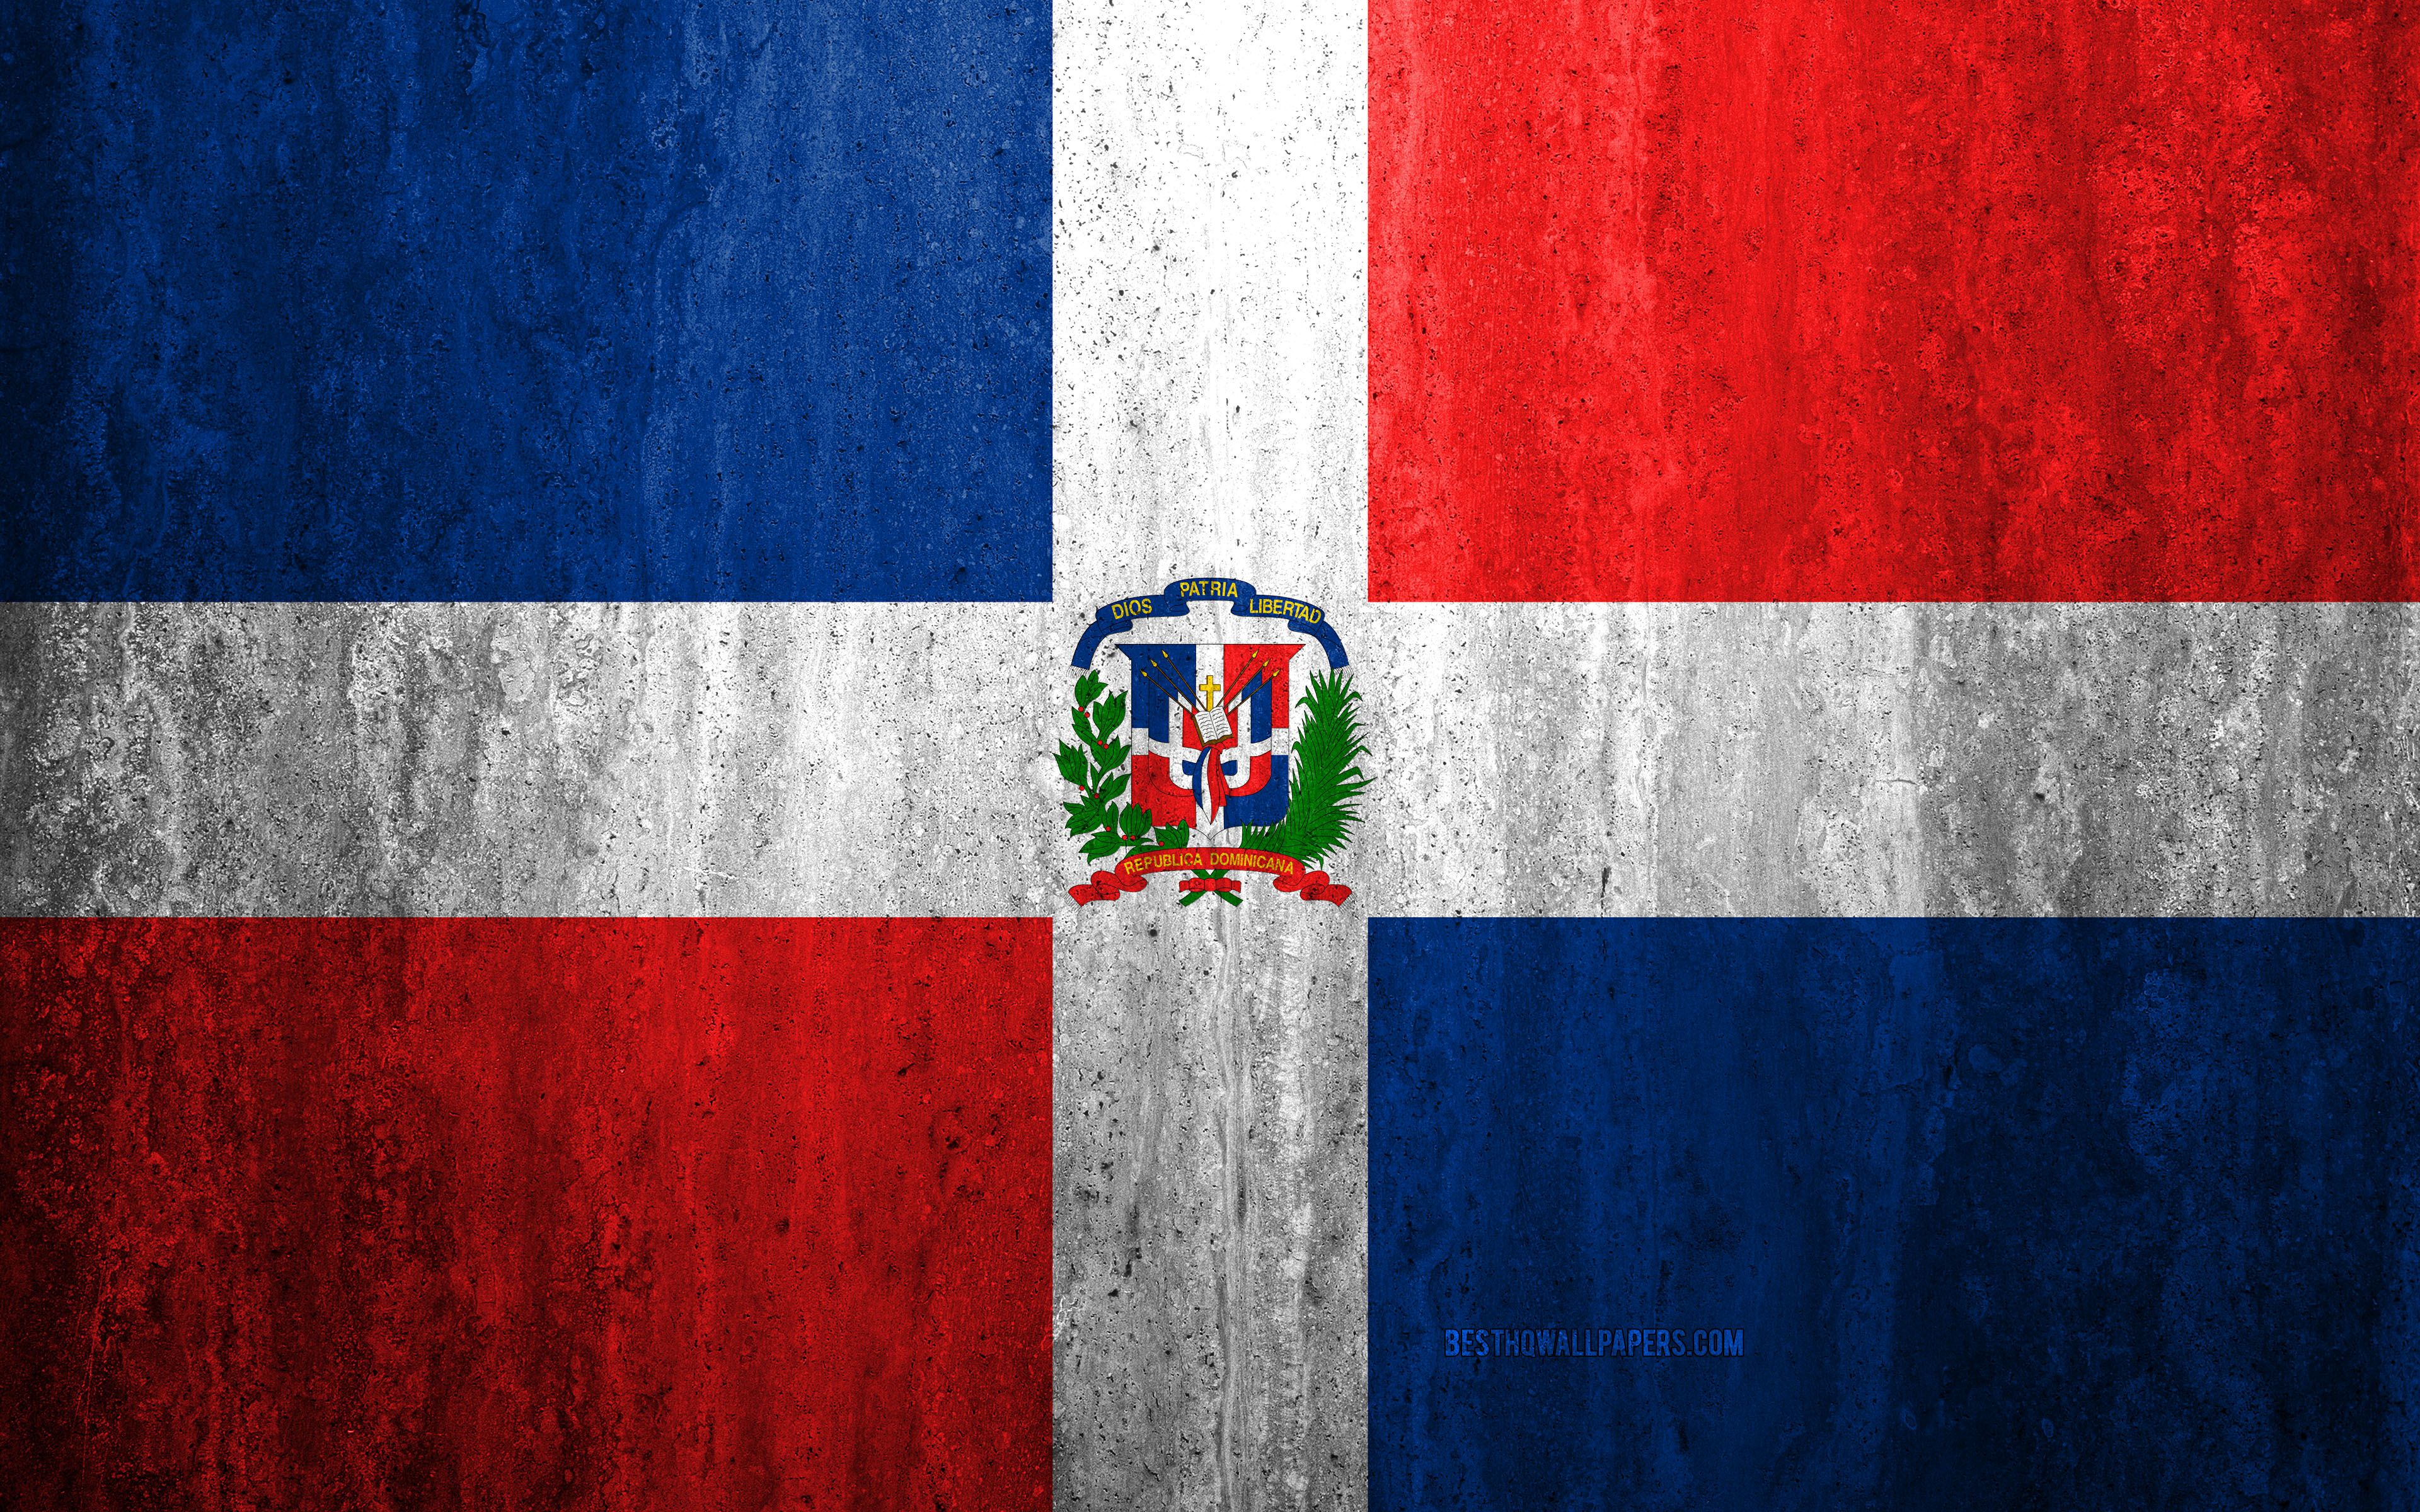 Descargar Fondos De Pantalla Bandera Dominicana 4k Papel Arrugado